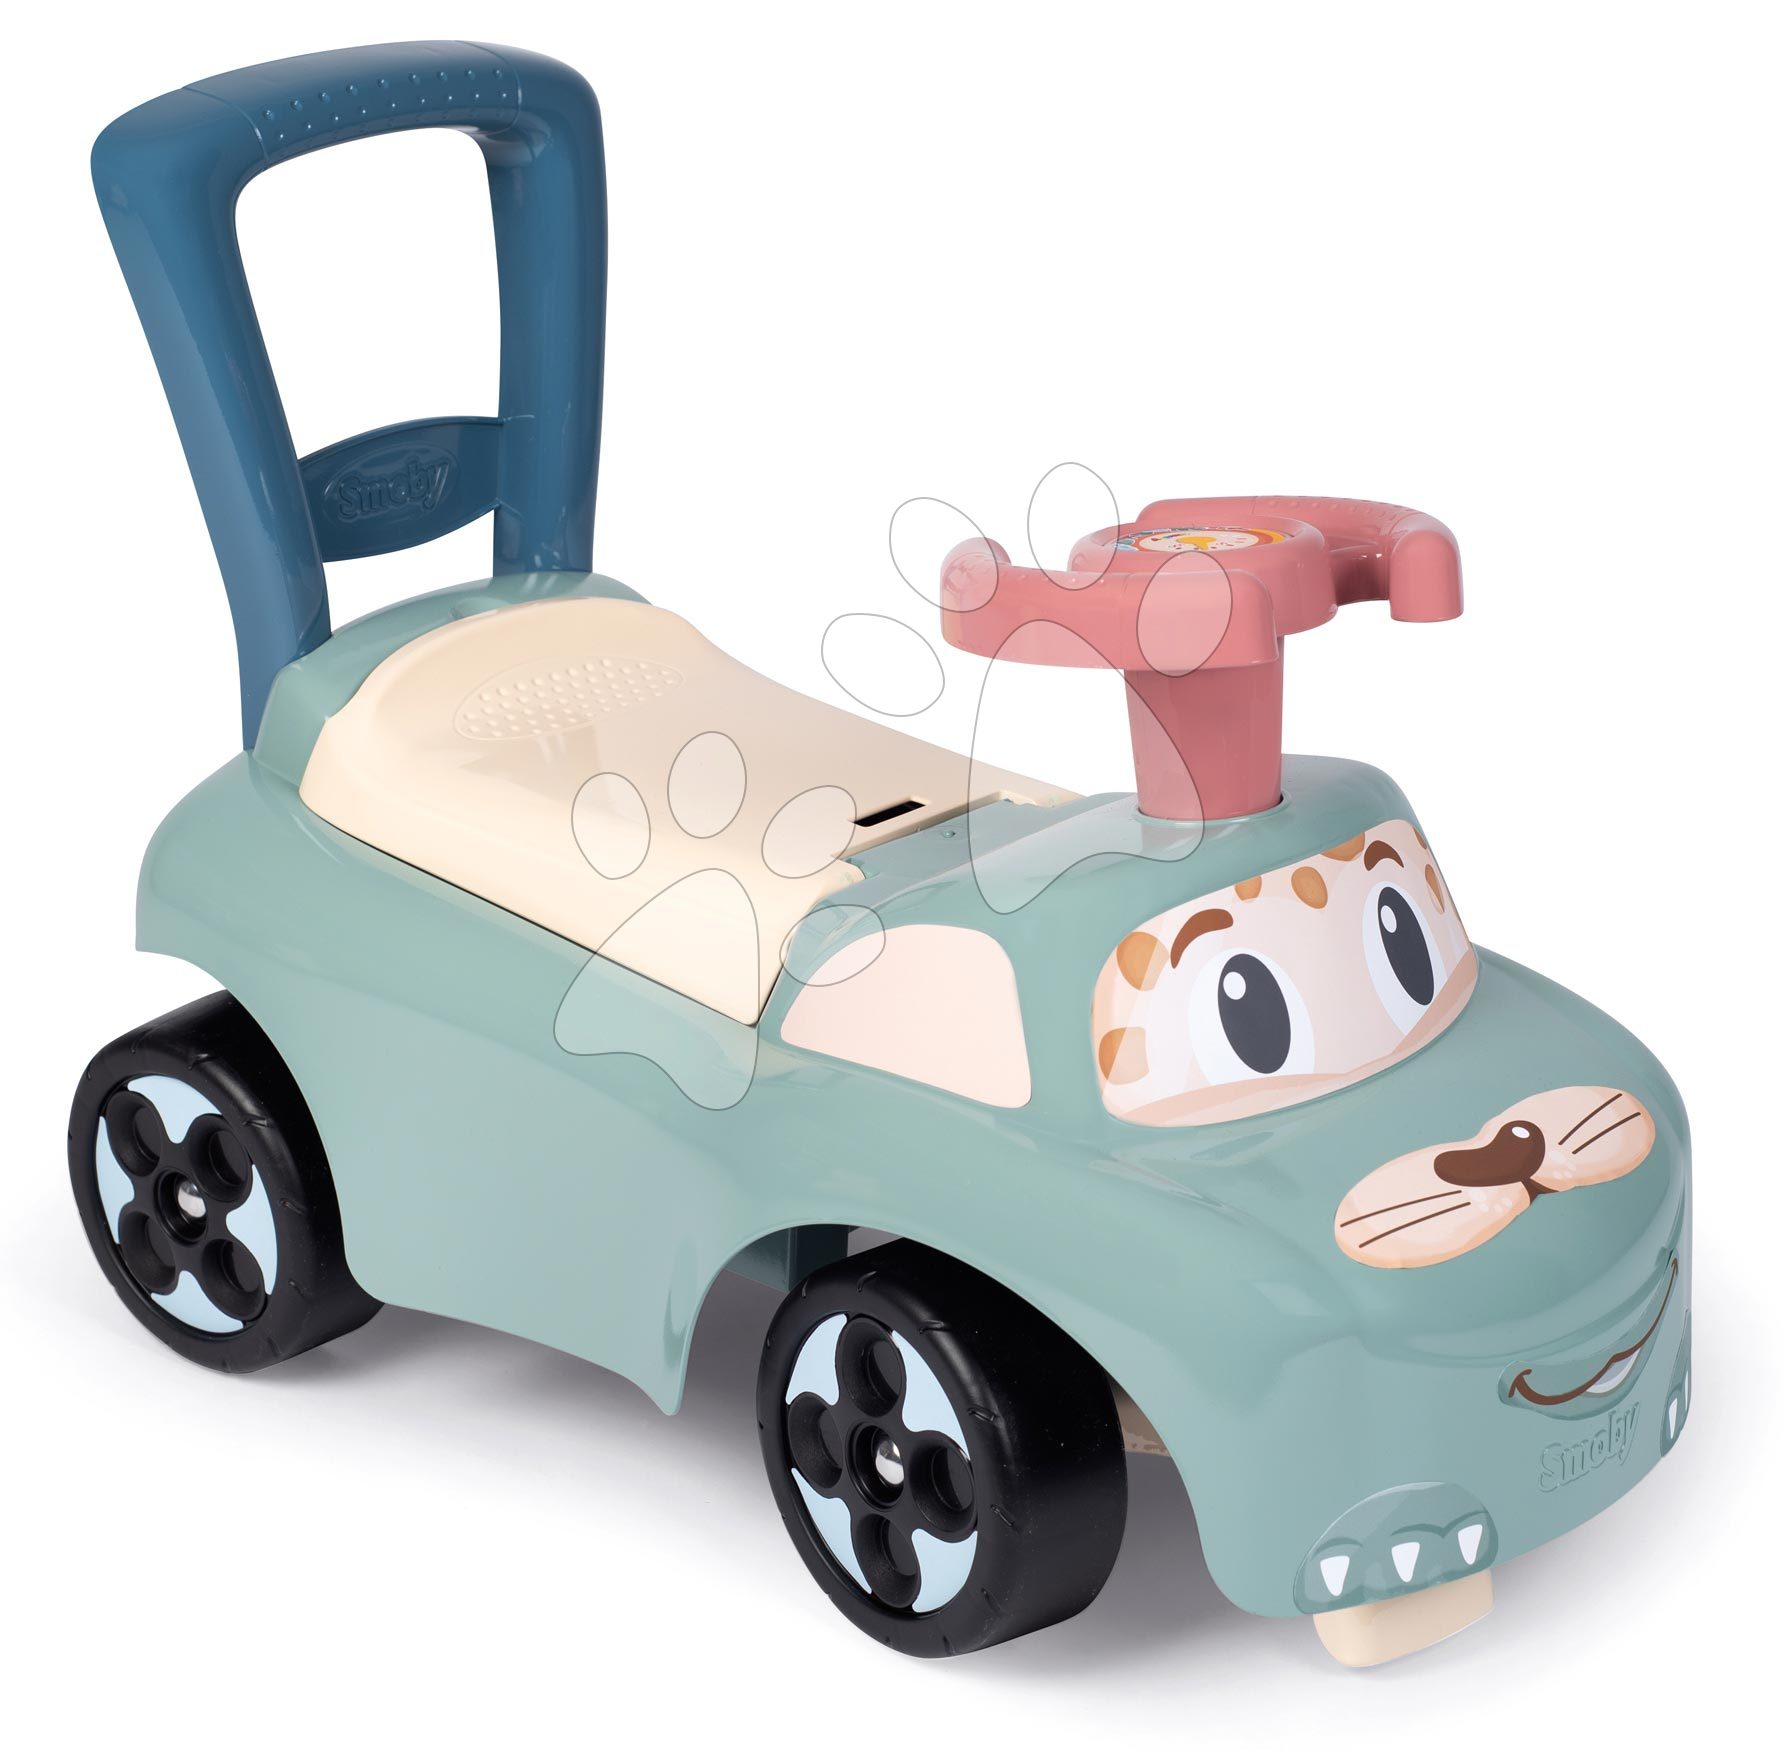 Rutschfahrzeuge ab 10 Monaten - Auto Ride On Little Smoby Rutscher ergonomisch geformt mit Stauraum ab 10 Monaten SM140501